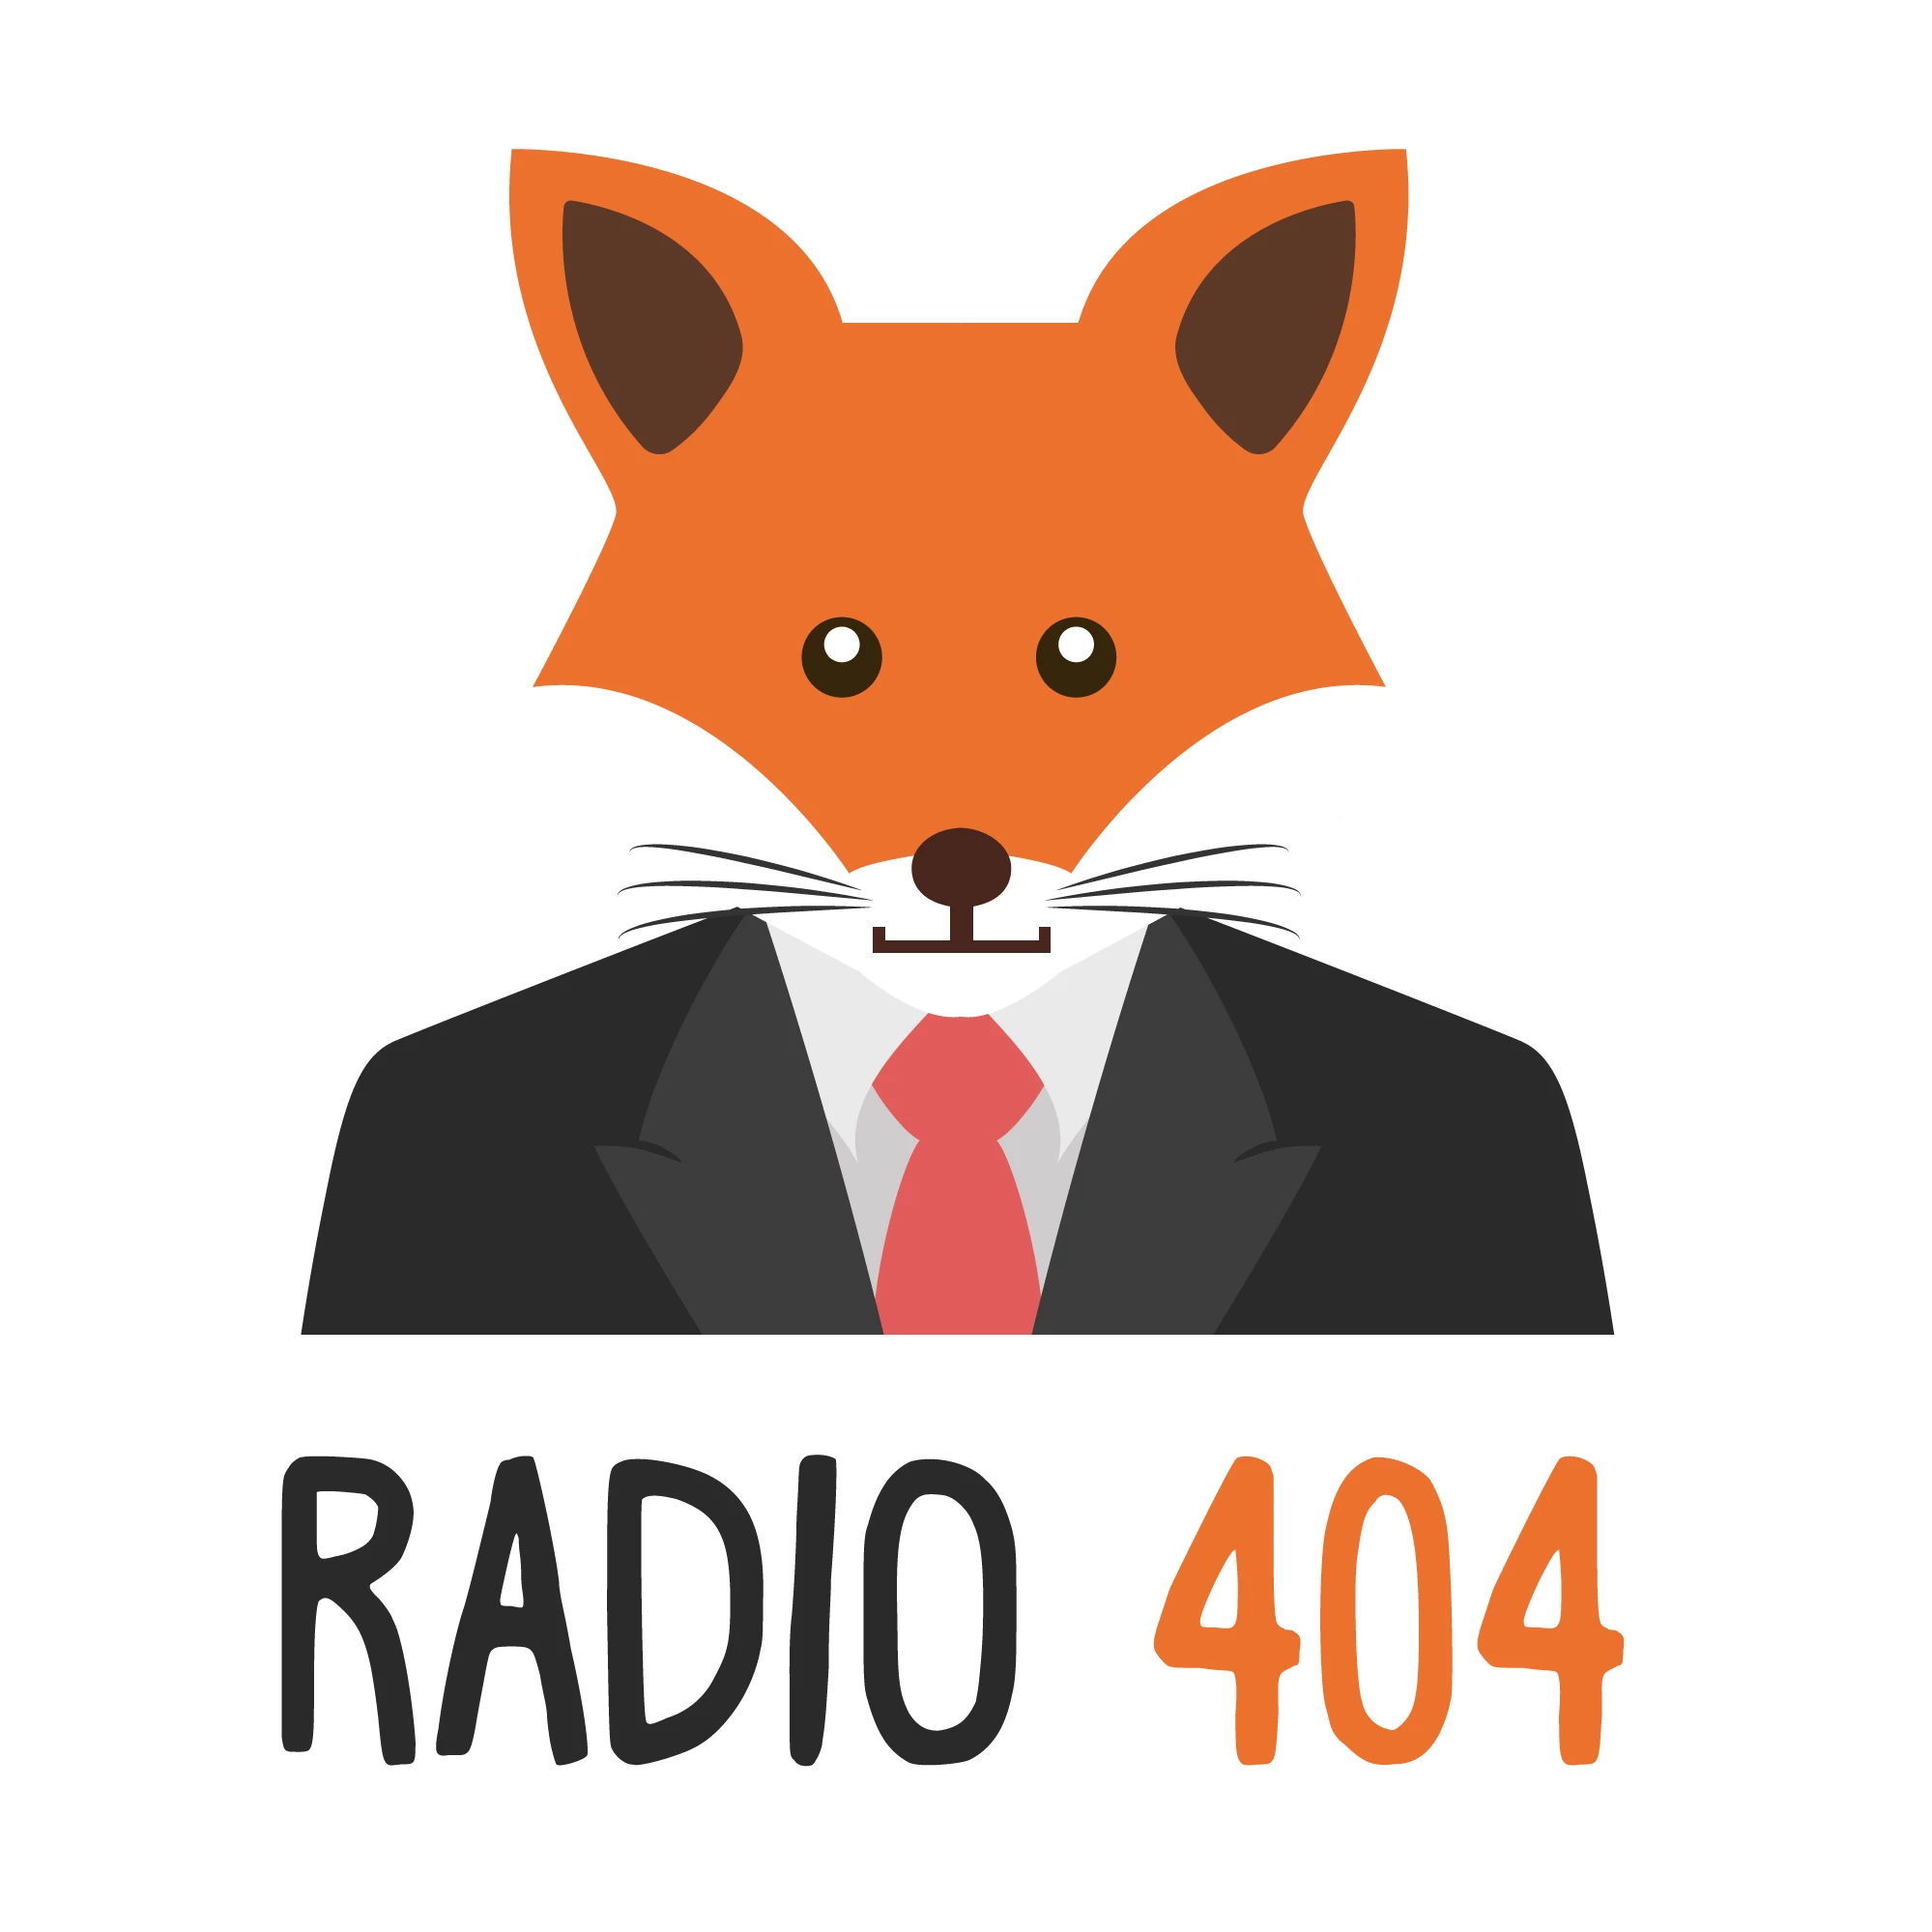 Radio 404